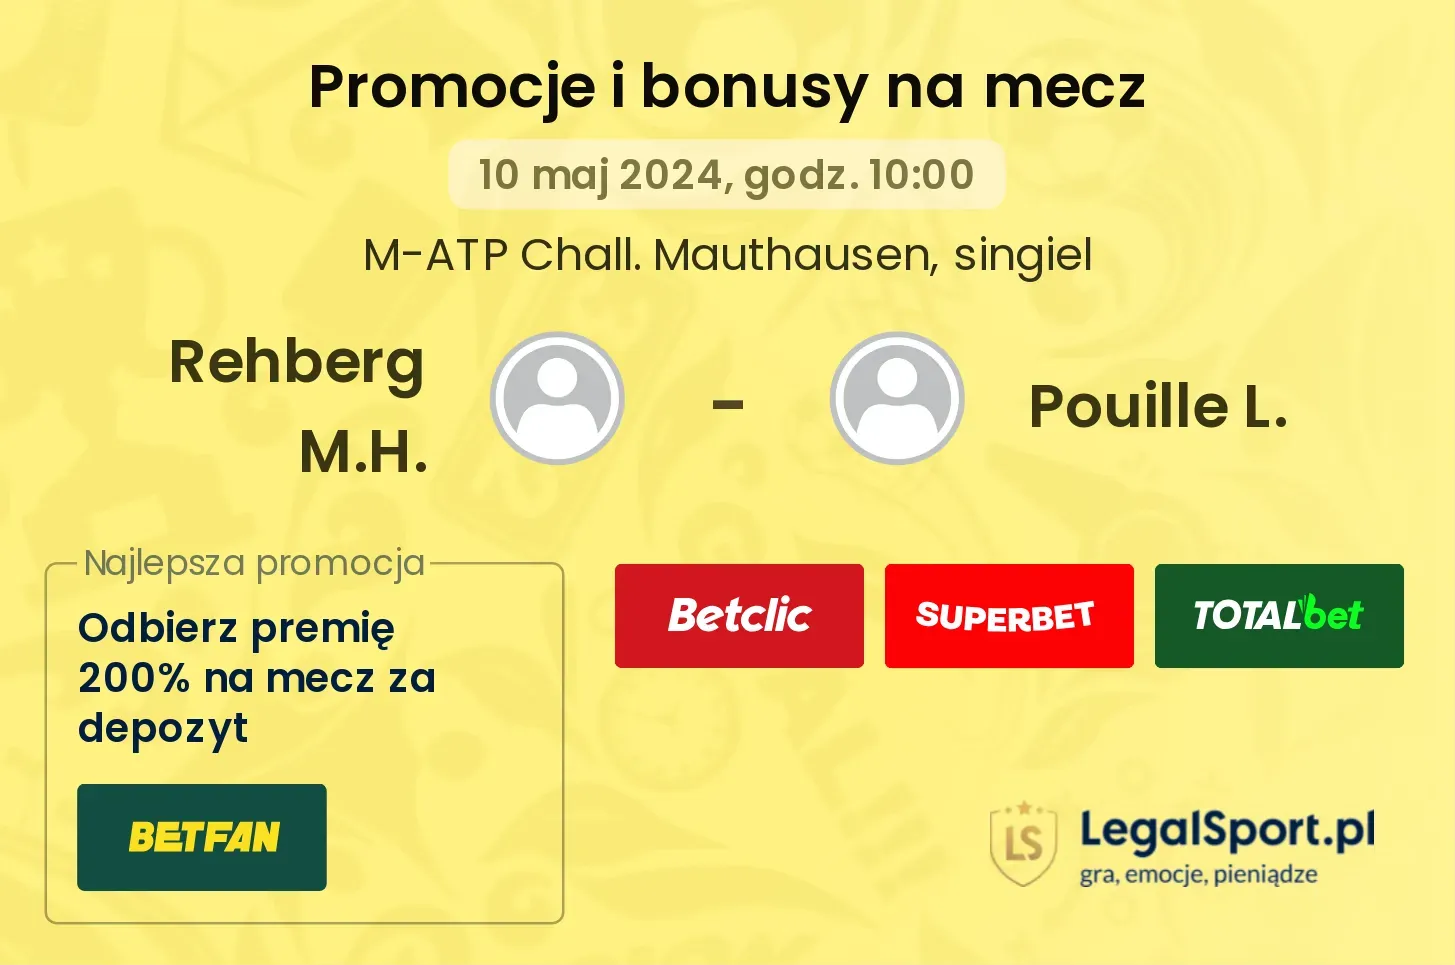 Rehberg M.H. - Pouille L. promocje bonusy na mecz